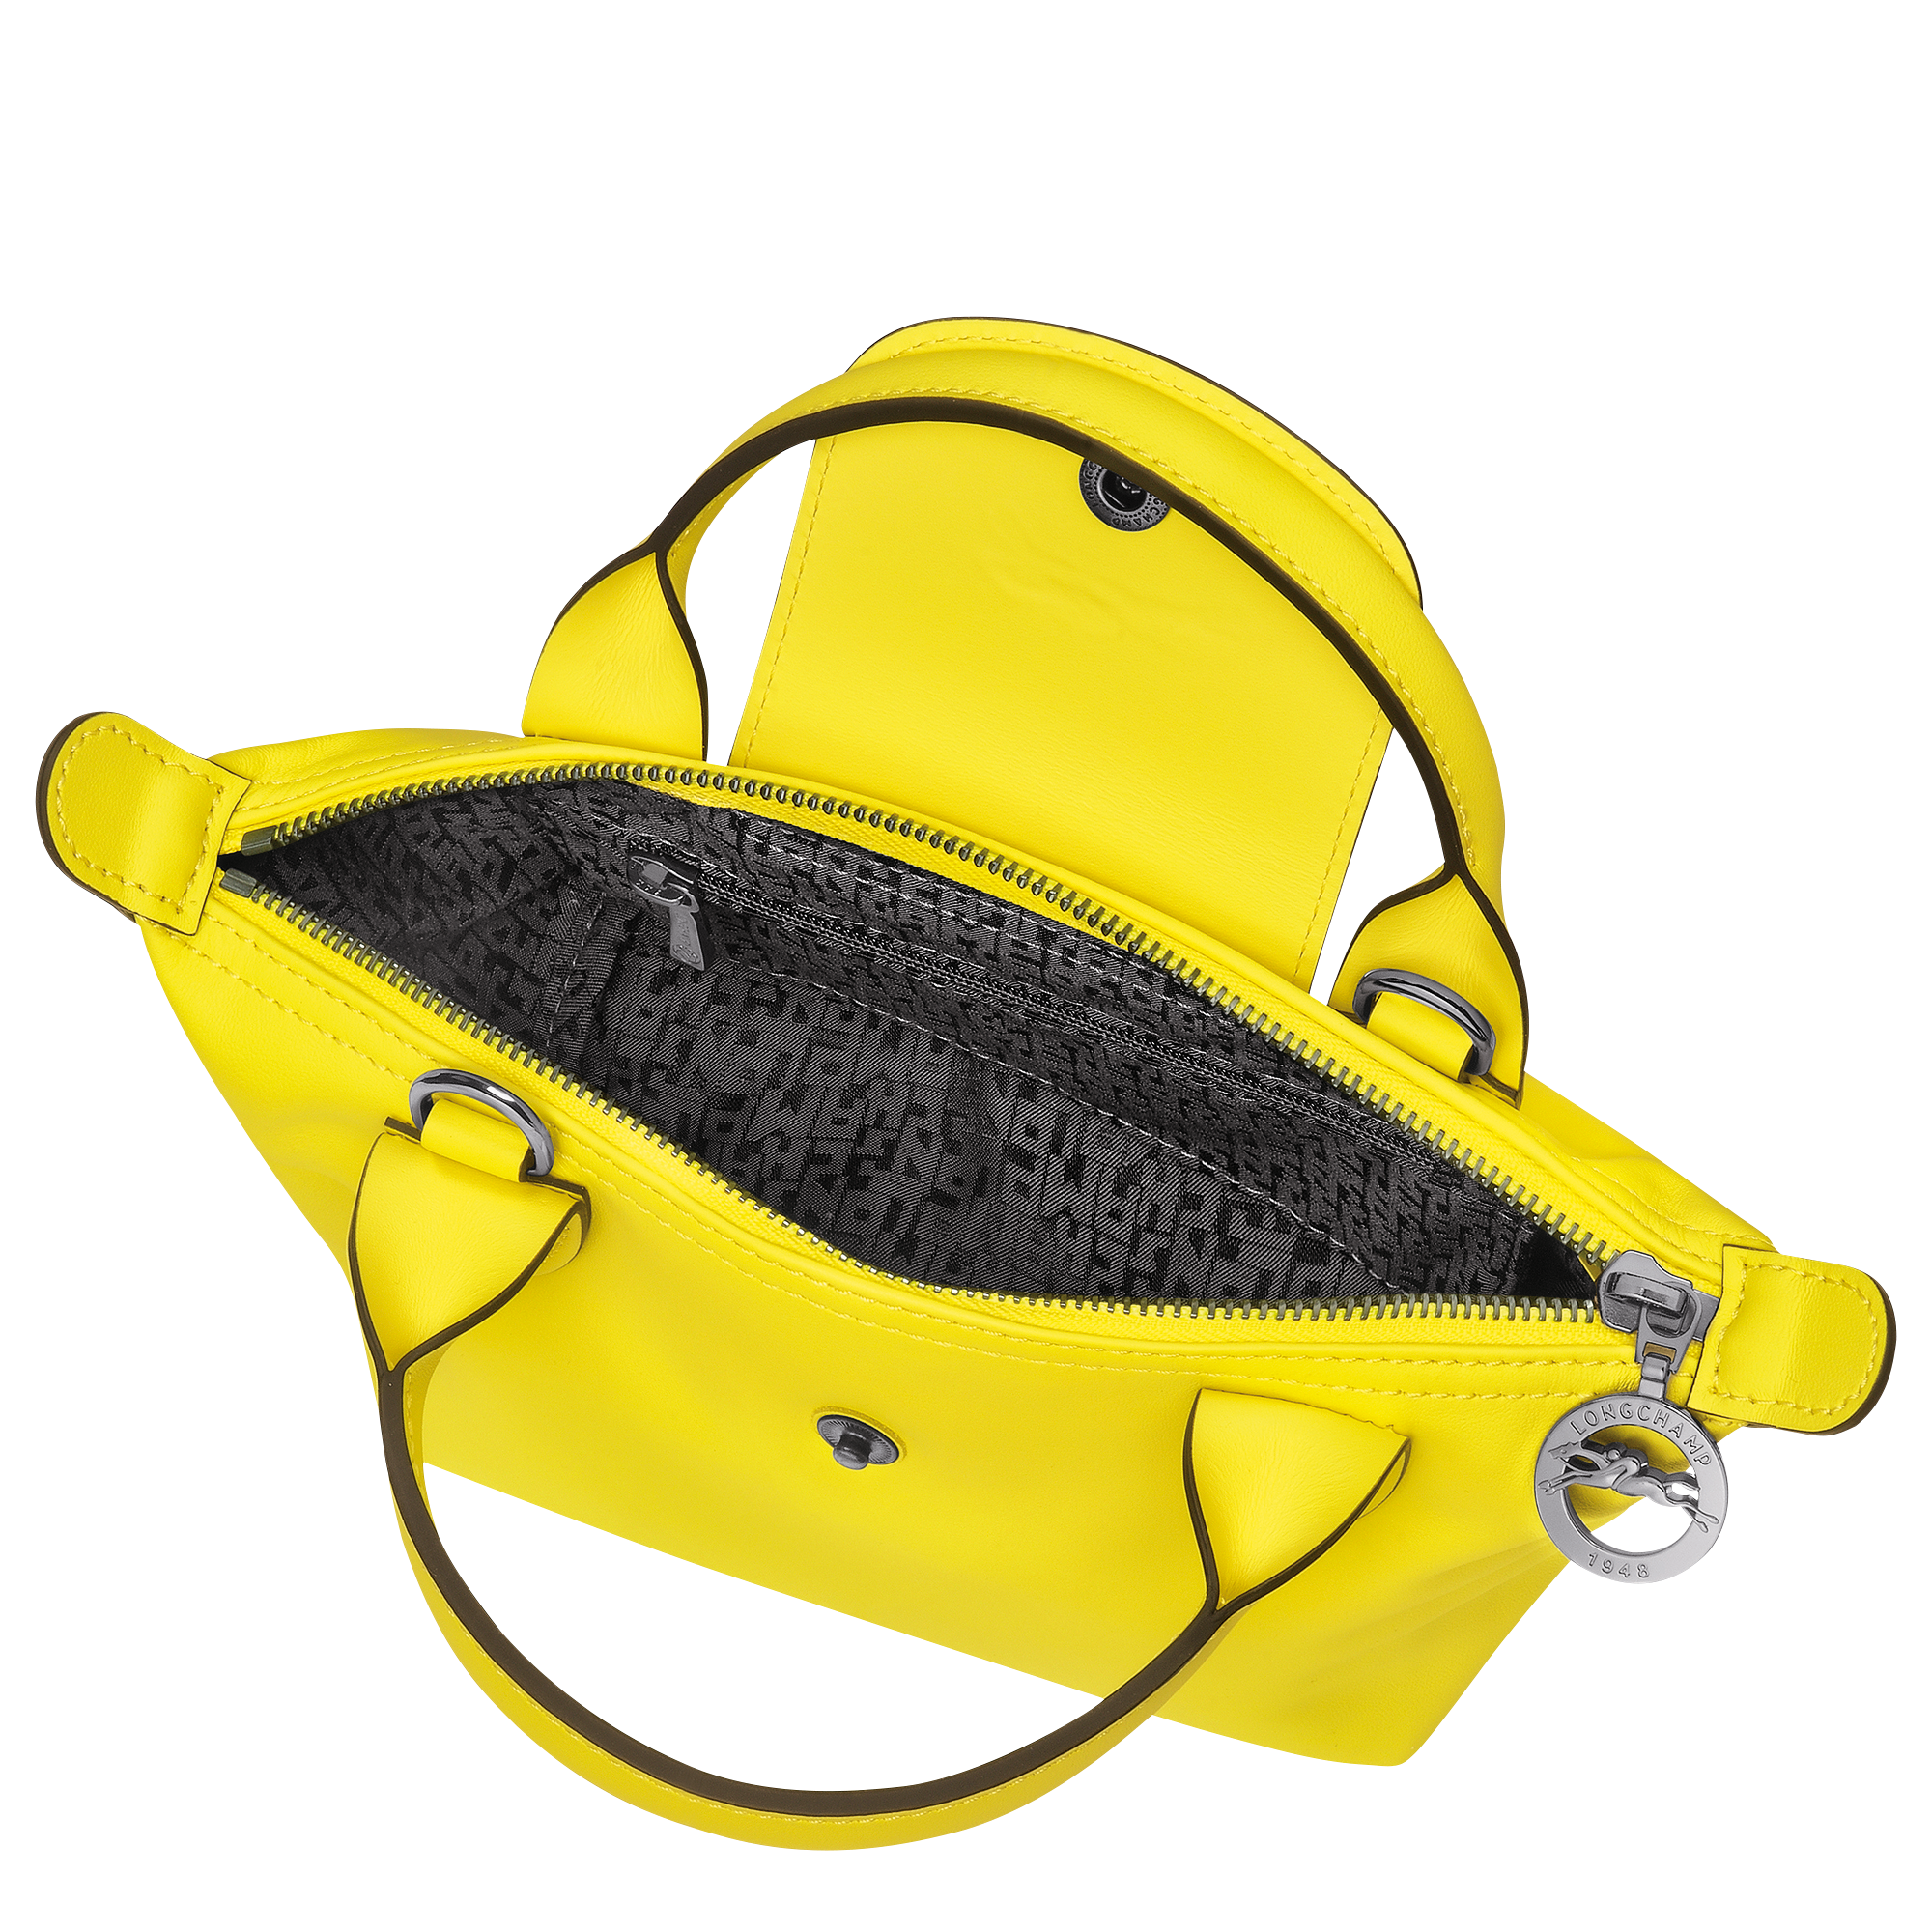 Top handle bag XS Le Pliage Xtra Black (L1500987017)